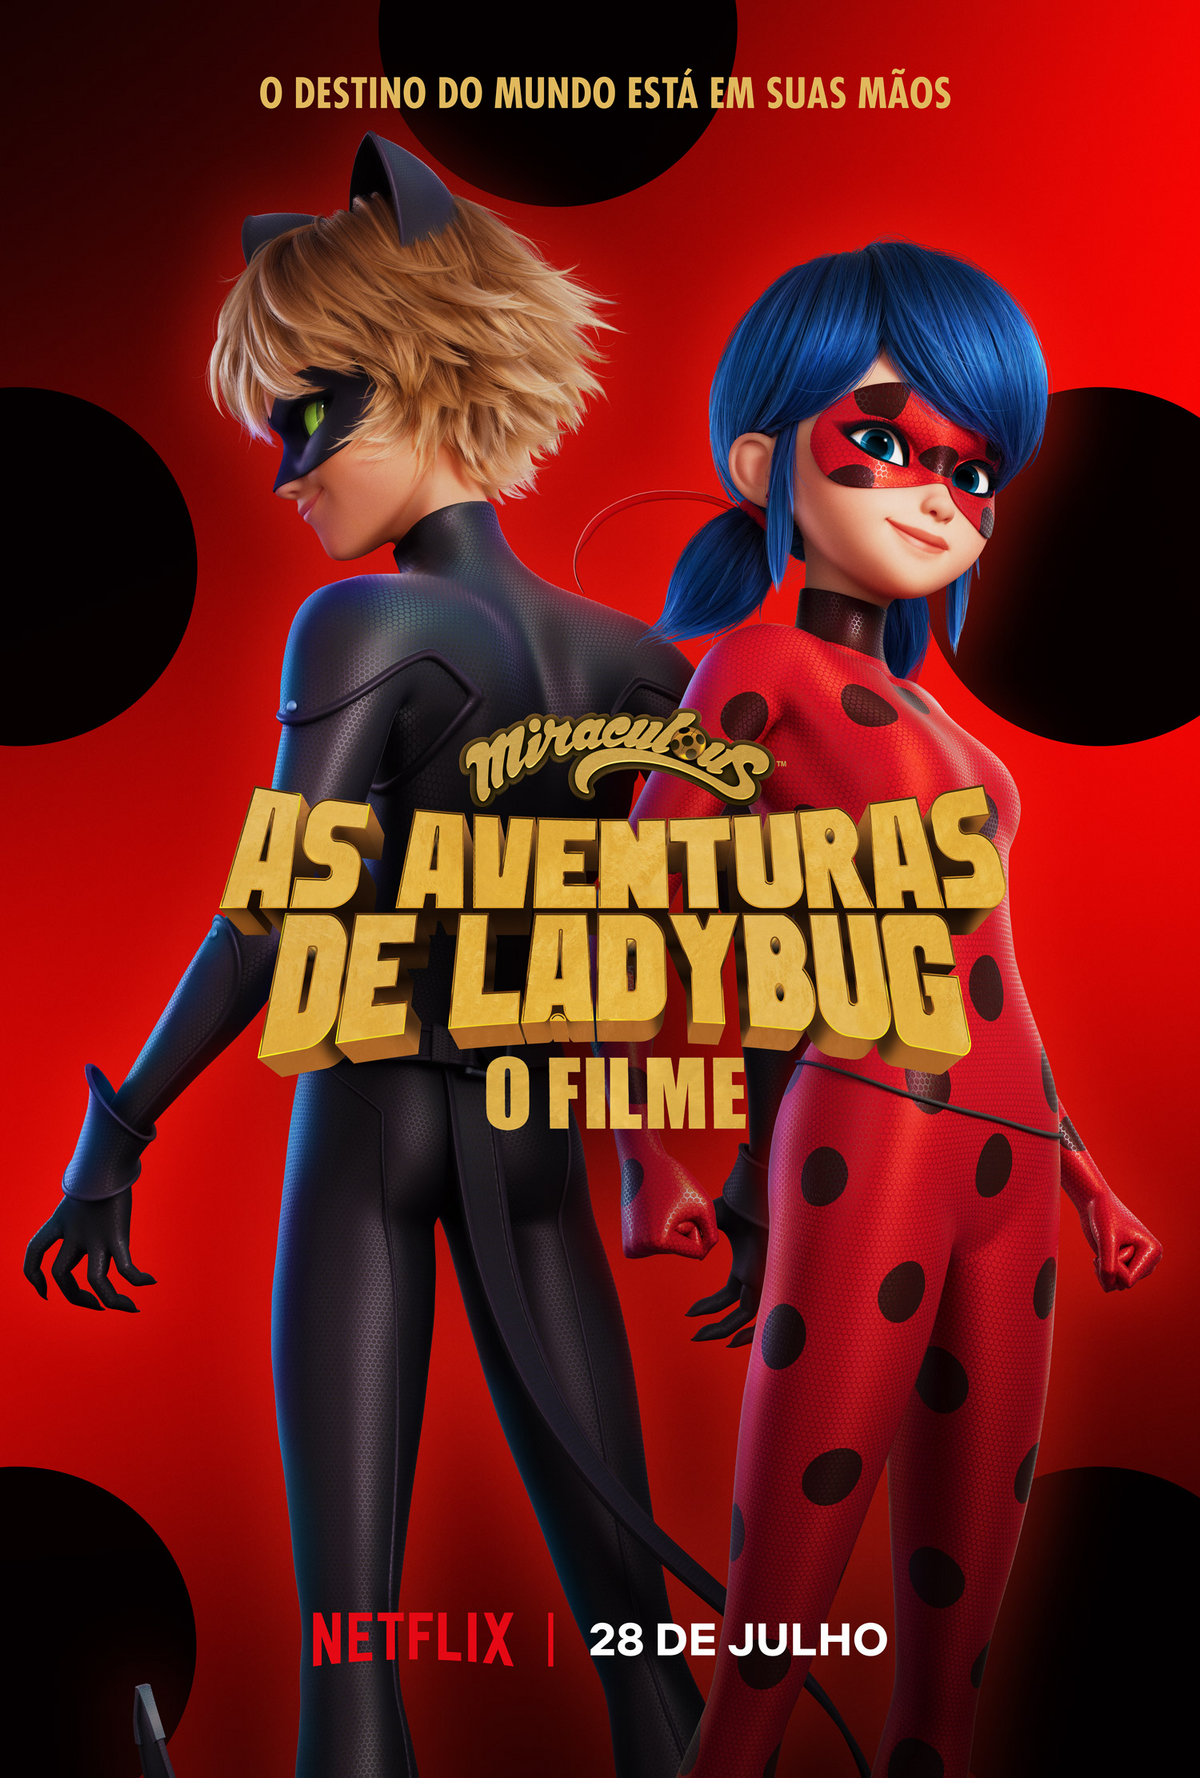 Conheça o Jogo Miraculous: Ladybug & Gato Noir Jogo Oficial 